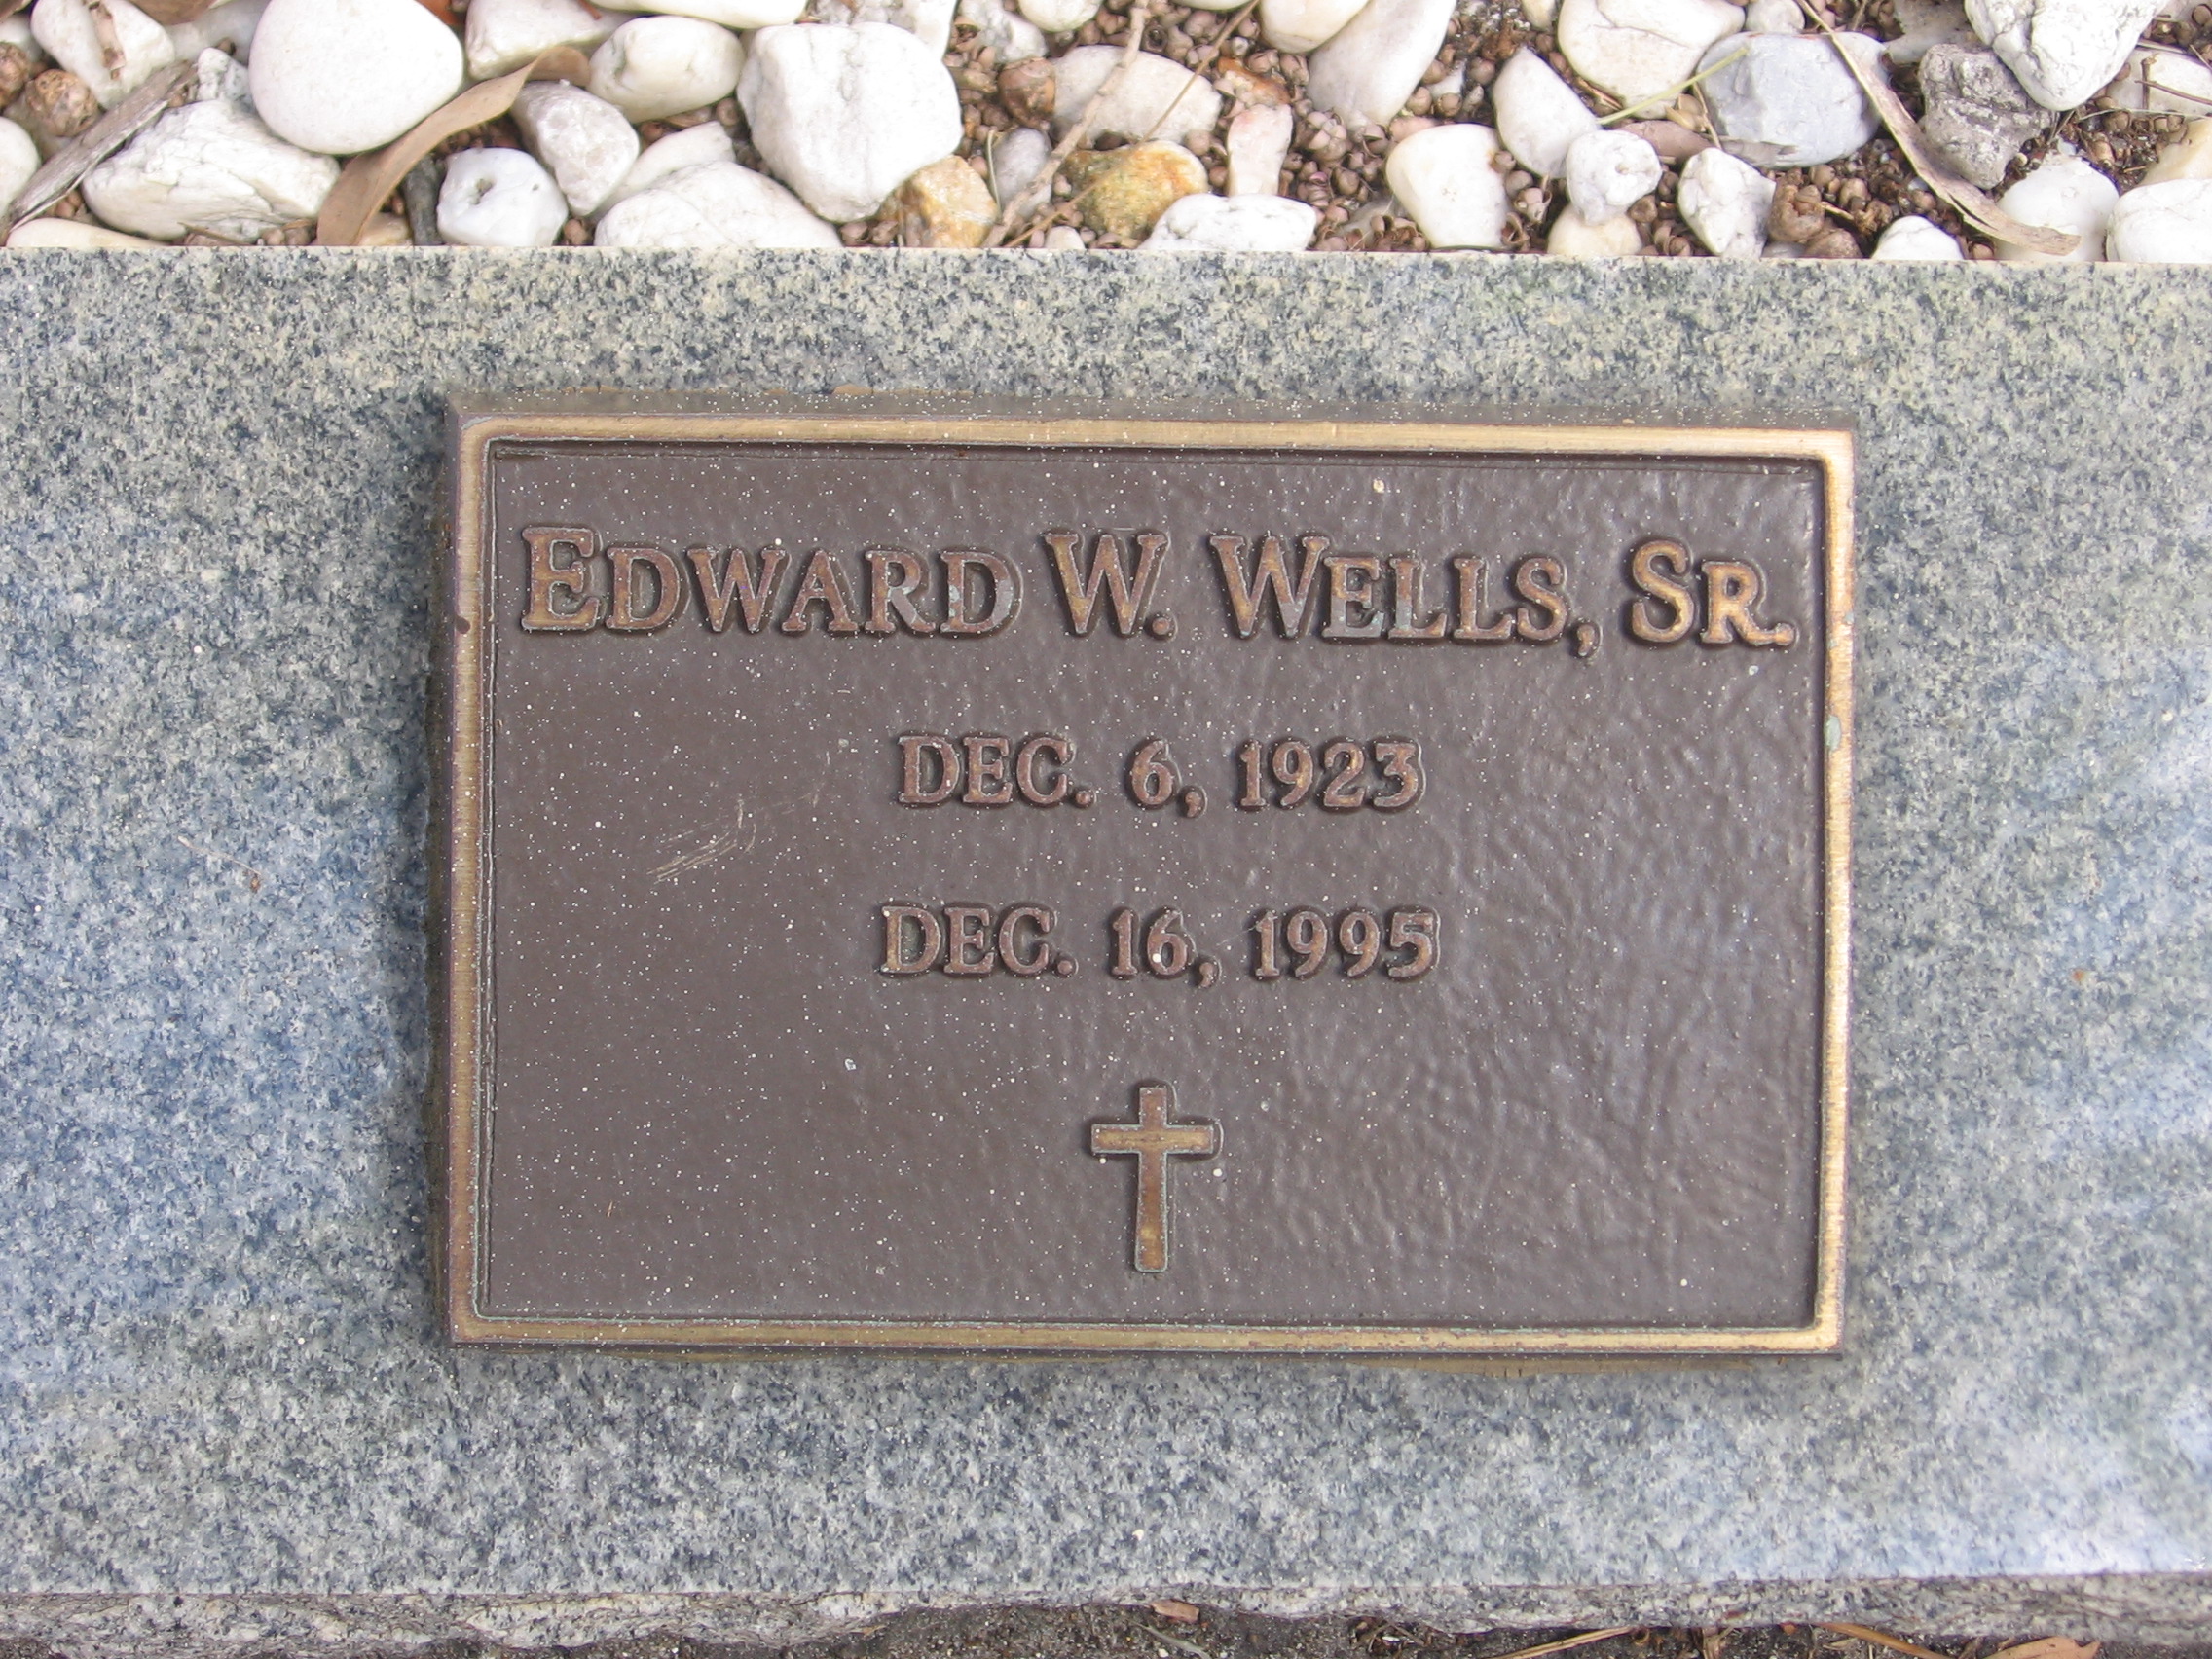 Edward W Wells, Sr